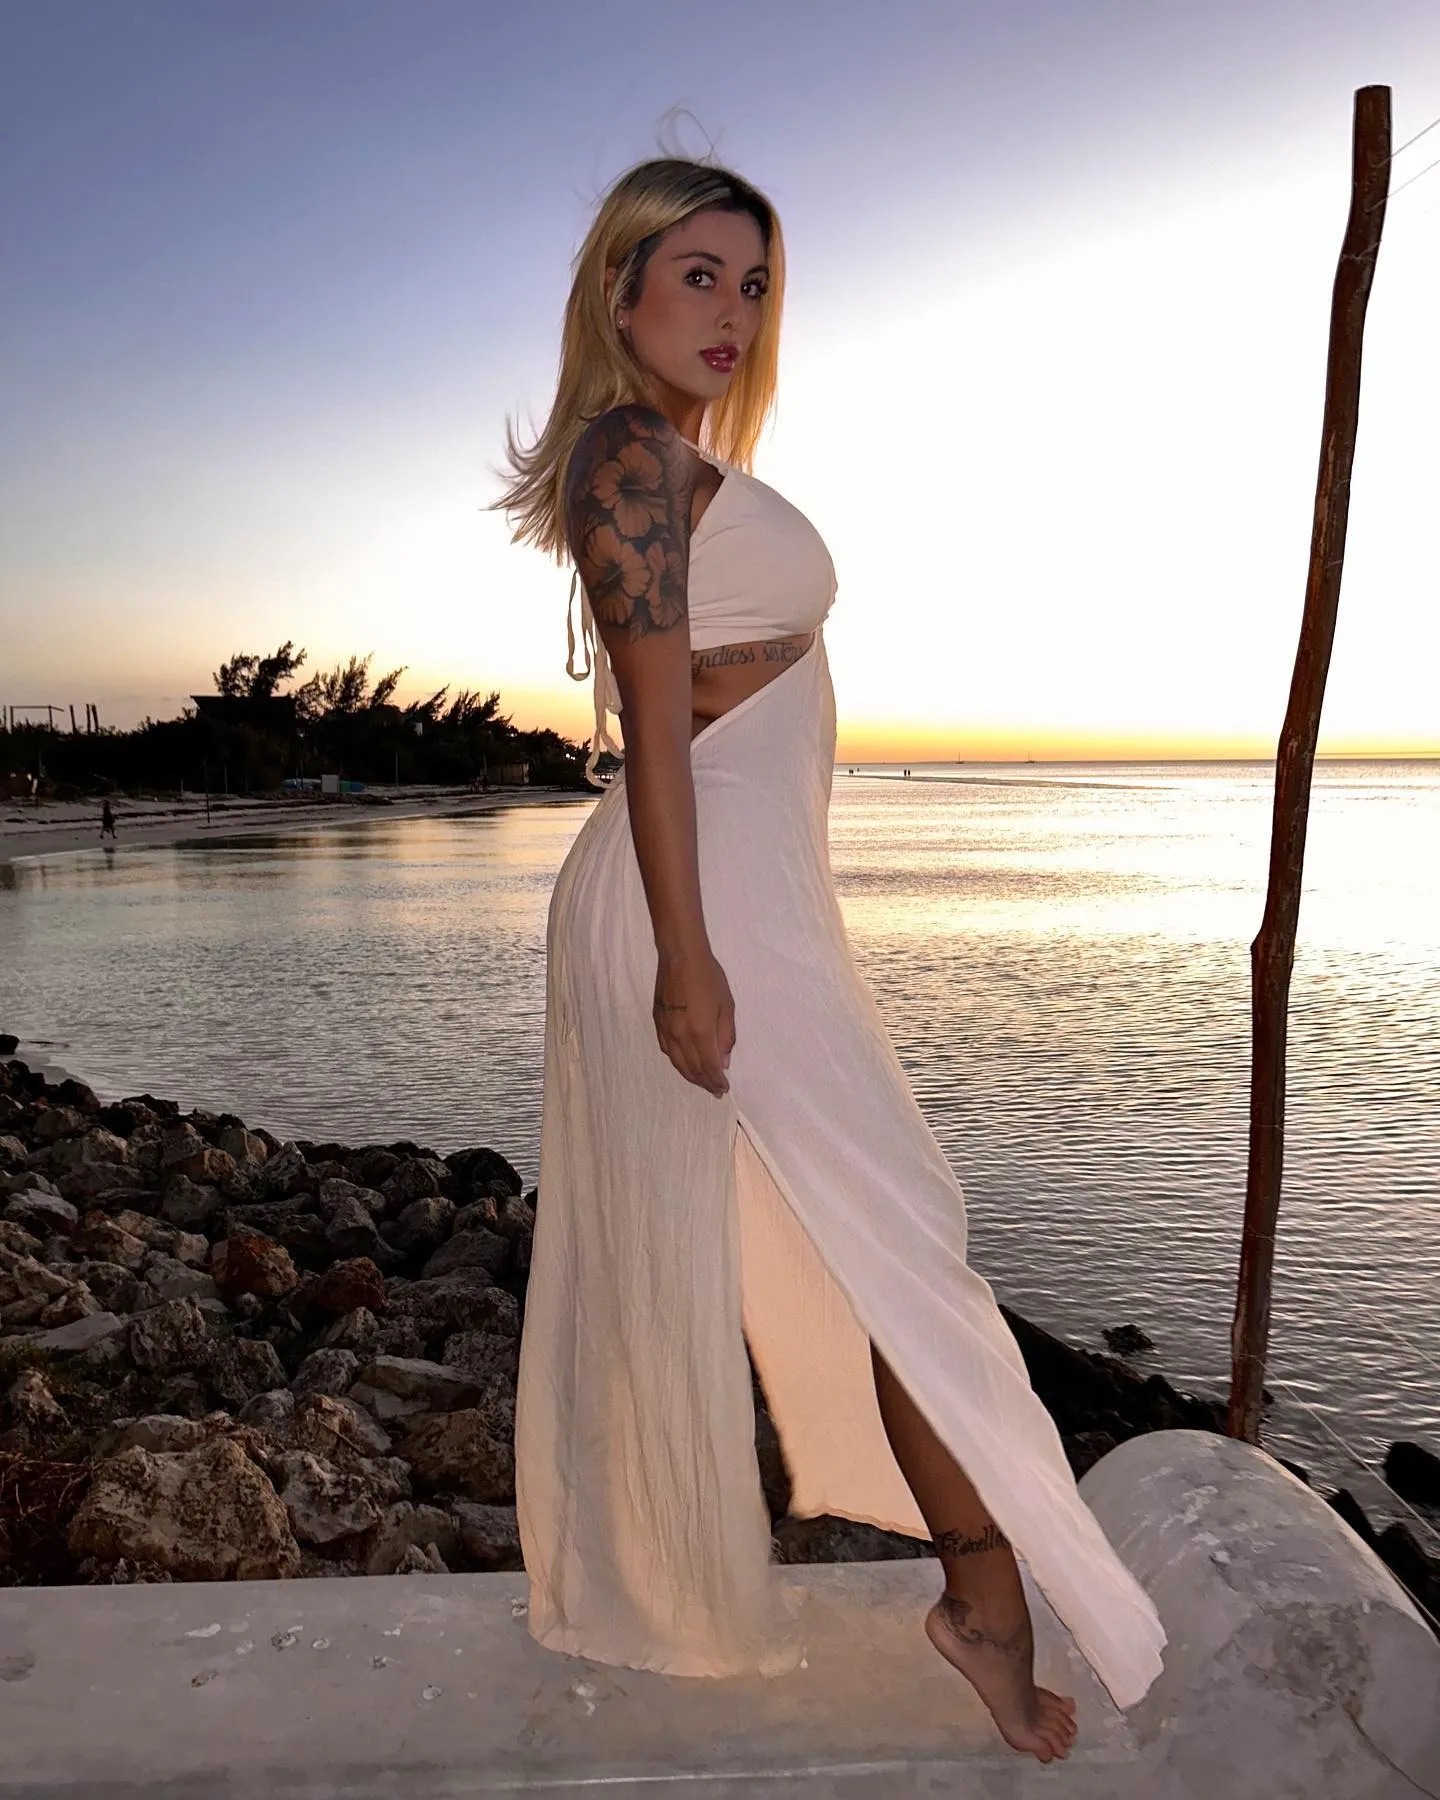 Alexia bride for sale in ukraine